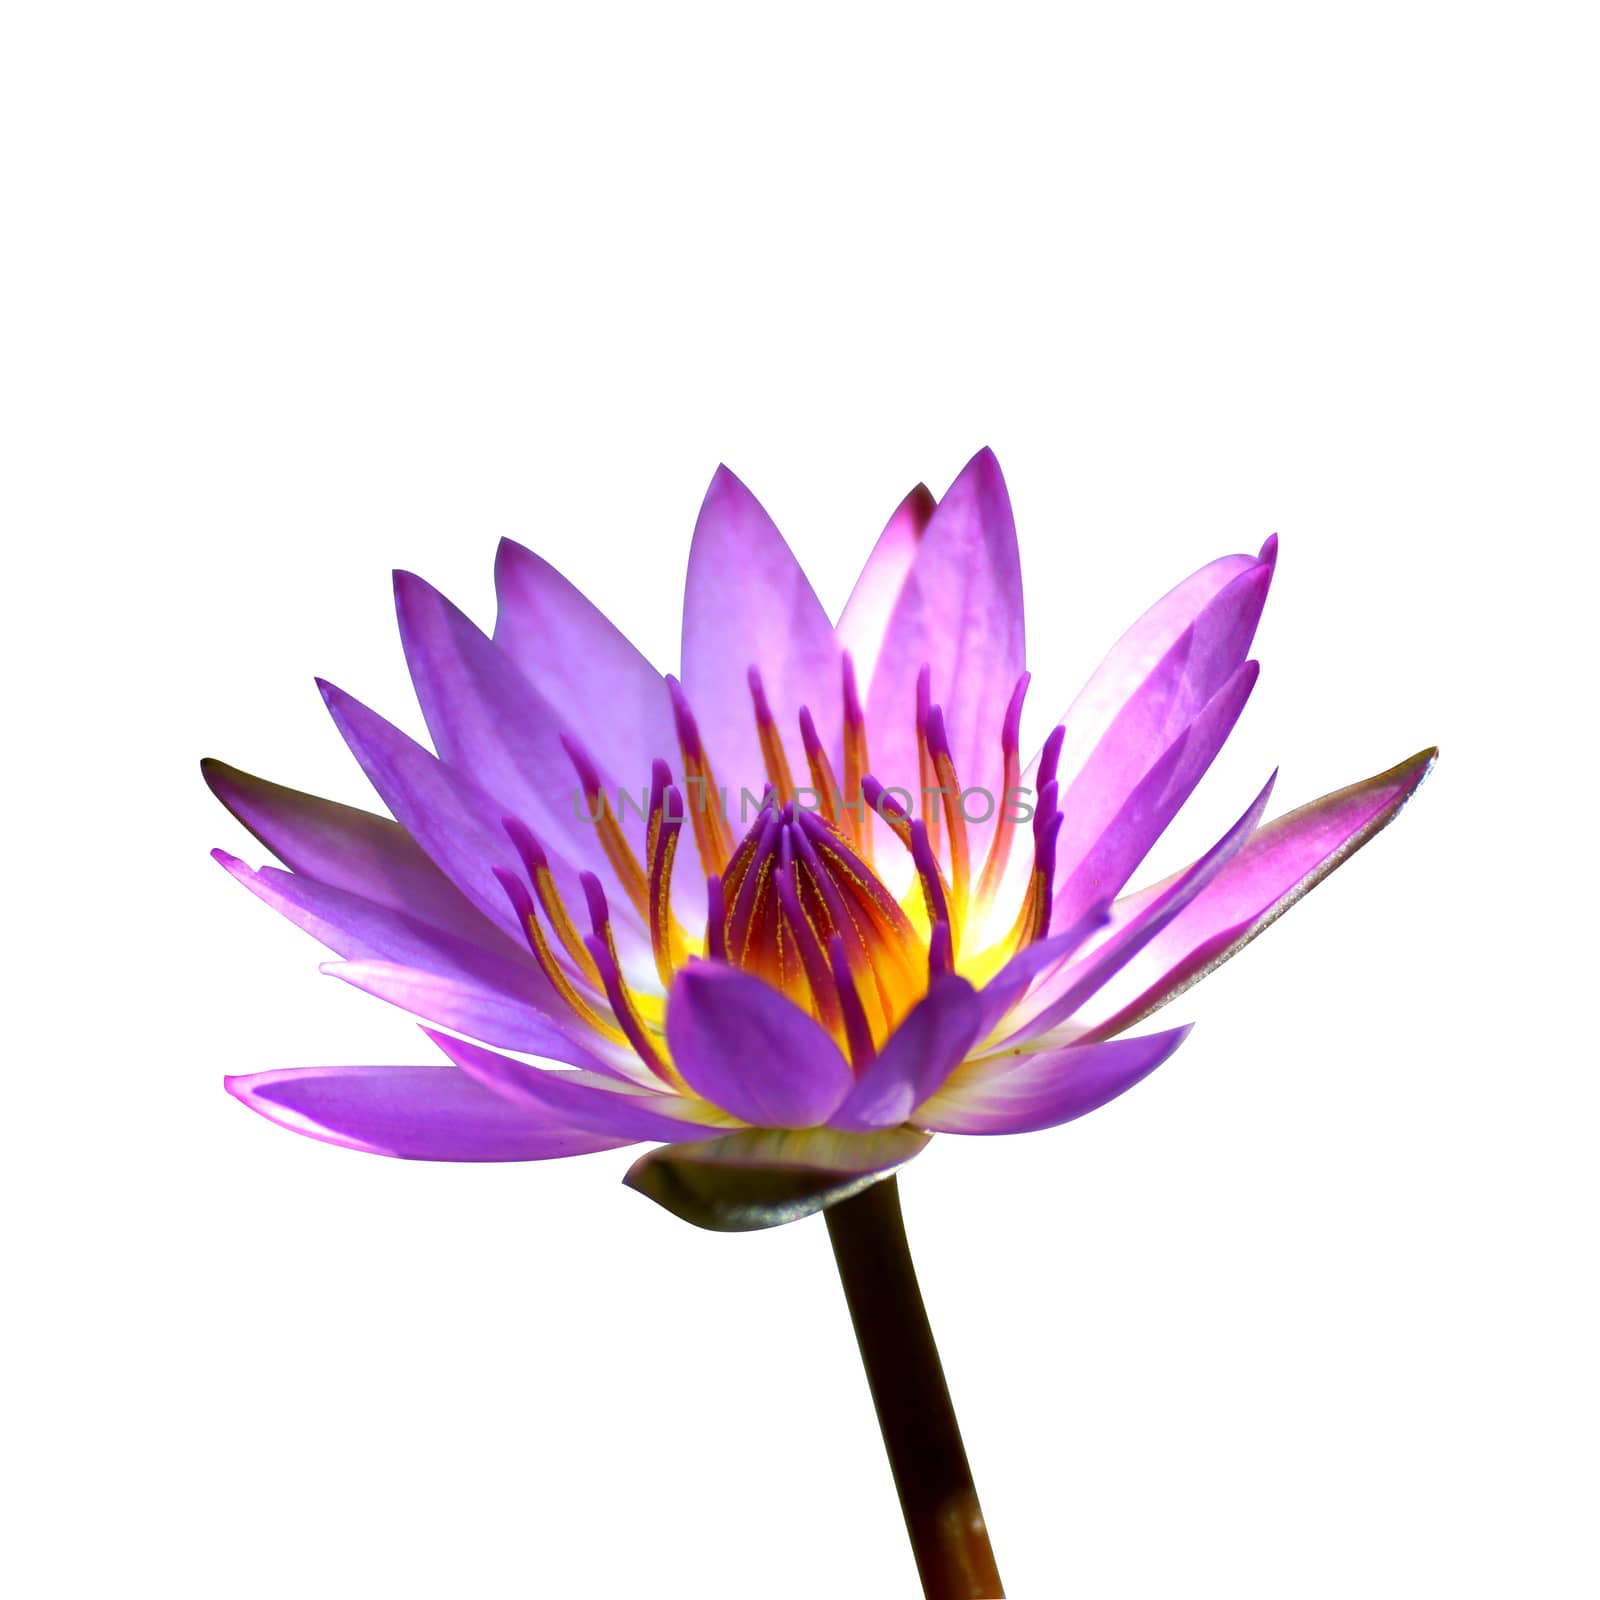 Lotus flower blooming in the rainy season.